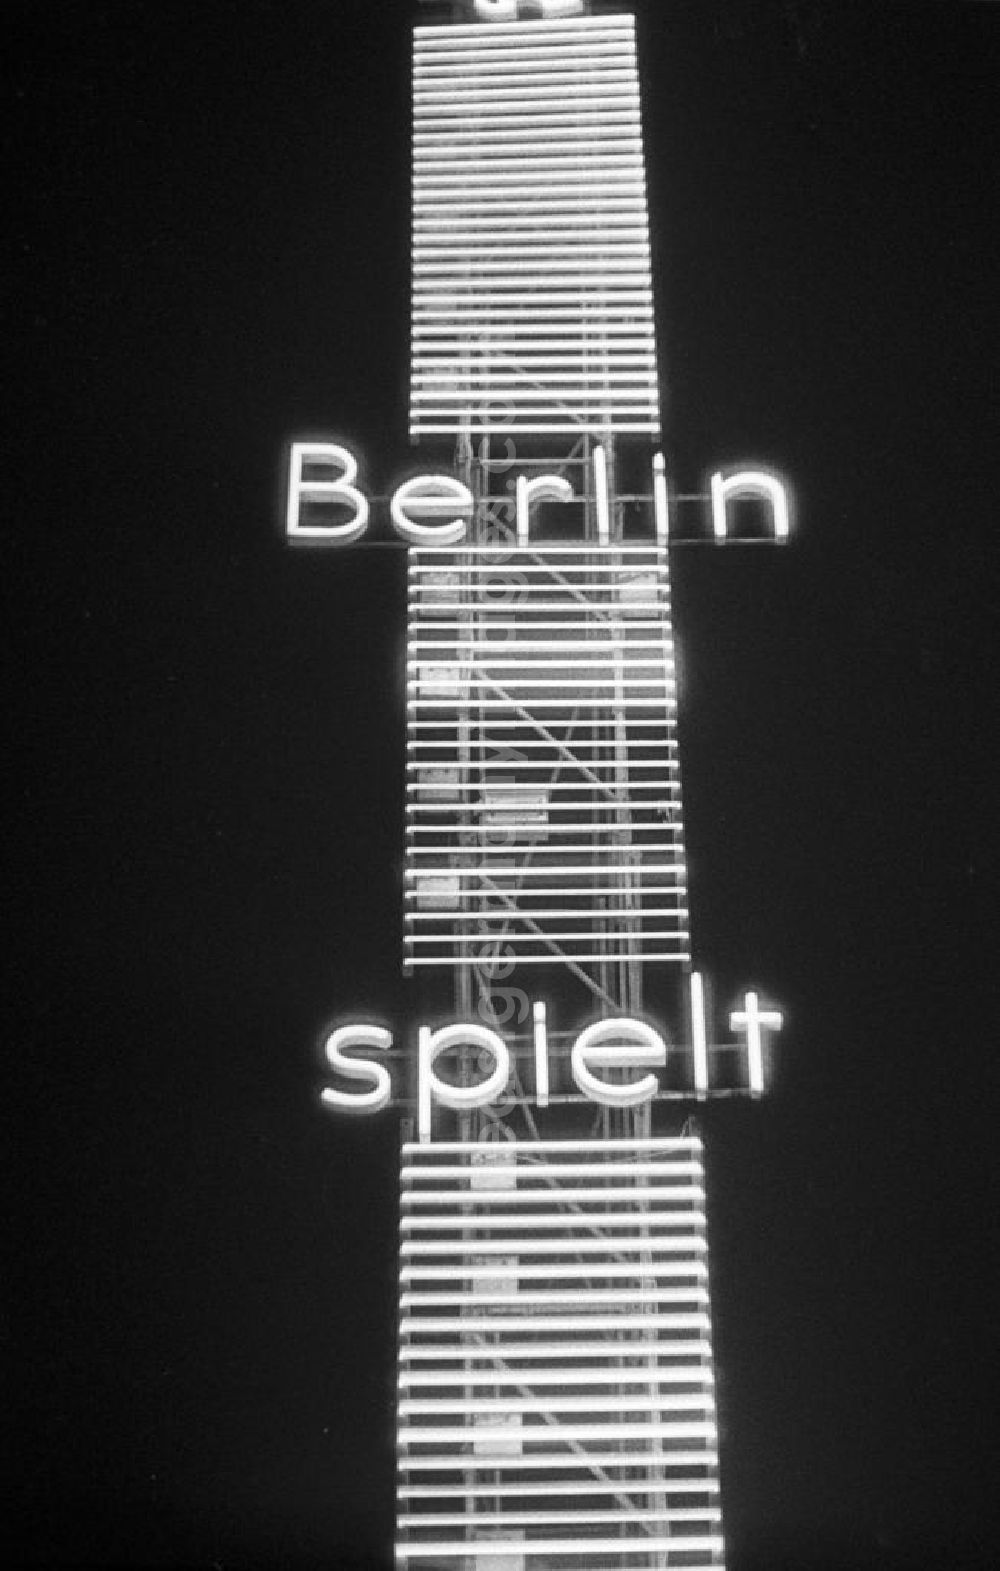 GDR image archive: Berlin - Leuchtreklame wohin das Auge blickt - als Schaufenster des Westens und Symbol des Wirtschaftswunders erstrahlt der Kurfürstendamm, Westberlins wichtigste Flaniermeile, auch abends in hellem Licht - hier heißt es in einer an einem großen Metallträger befestigten Leuchtreklame Berlin spielt. In den 5